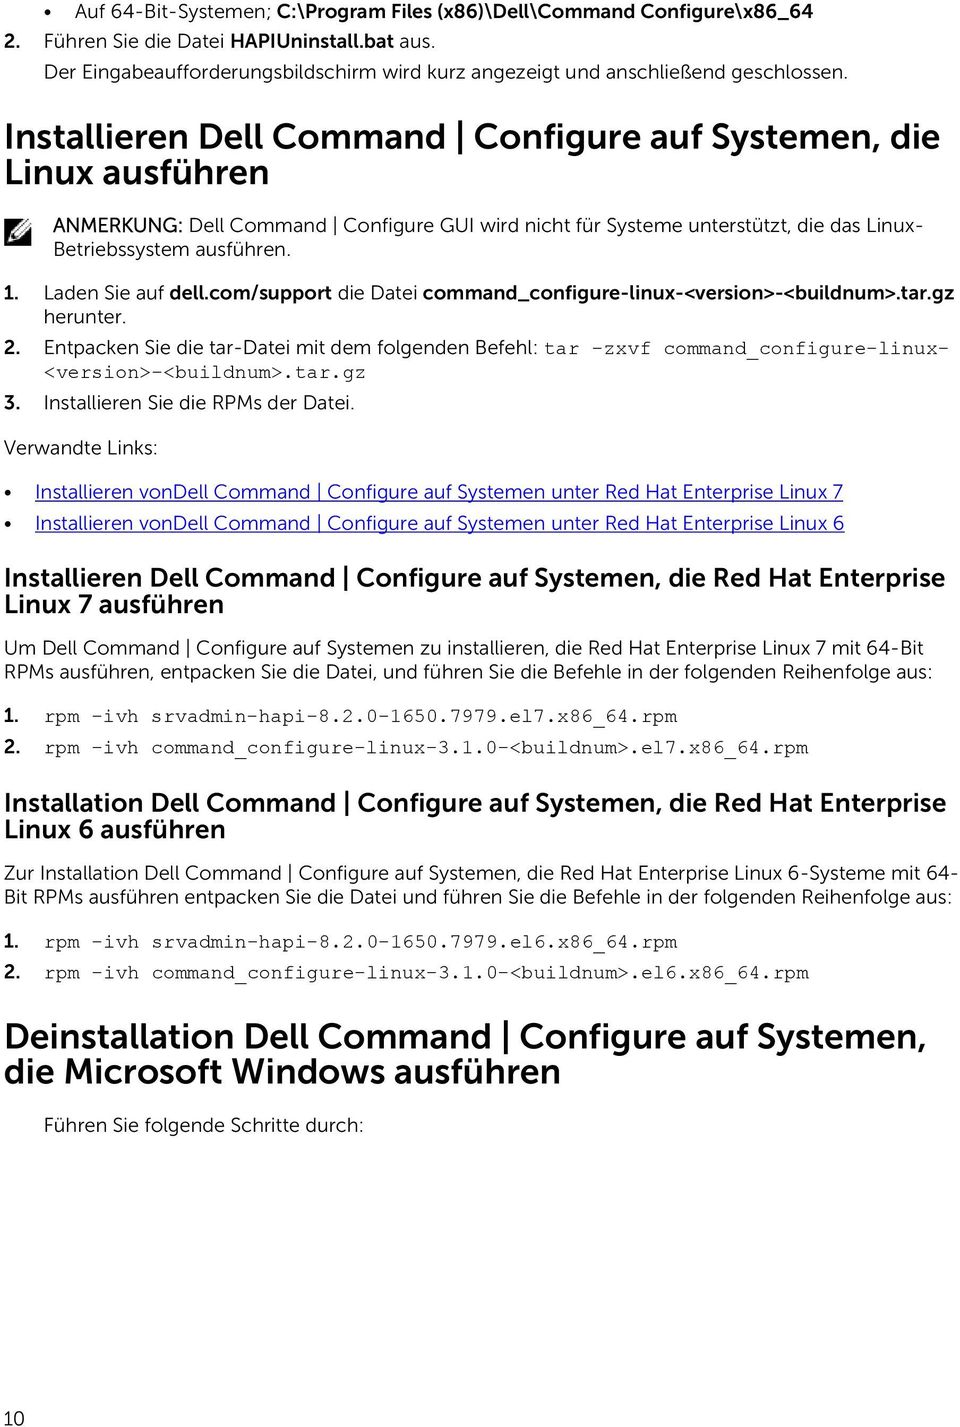 Installieren Dell Command Configure auf Systemen, die Linux ausführen ANMERKUNG: Dell Command Configure GUI wird nicht für Systeme unterstützt, die das Linux- Betriebssystem ausführen. 1.